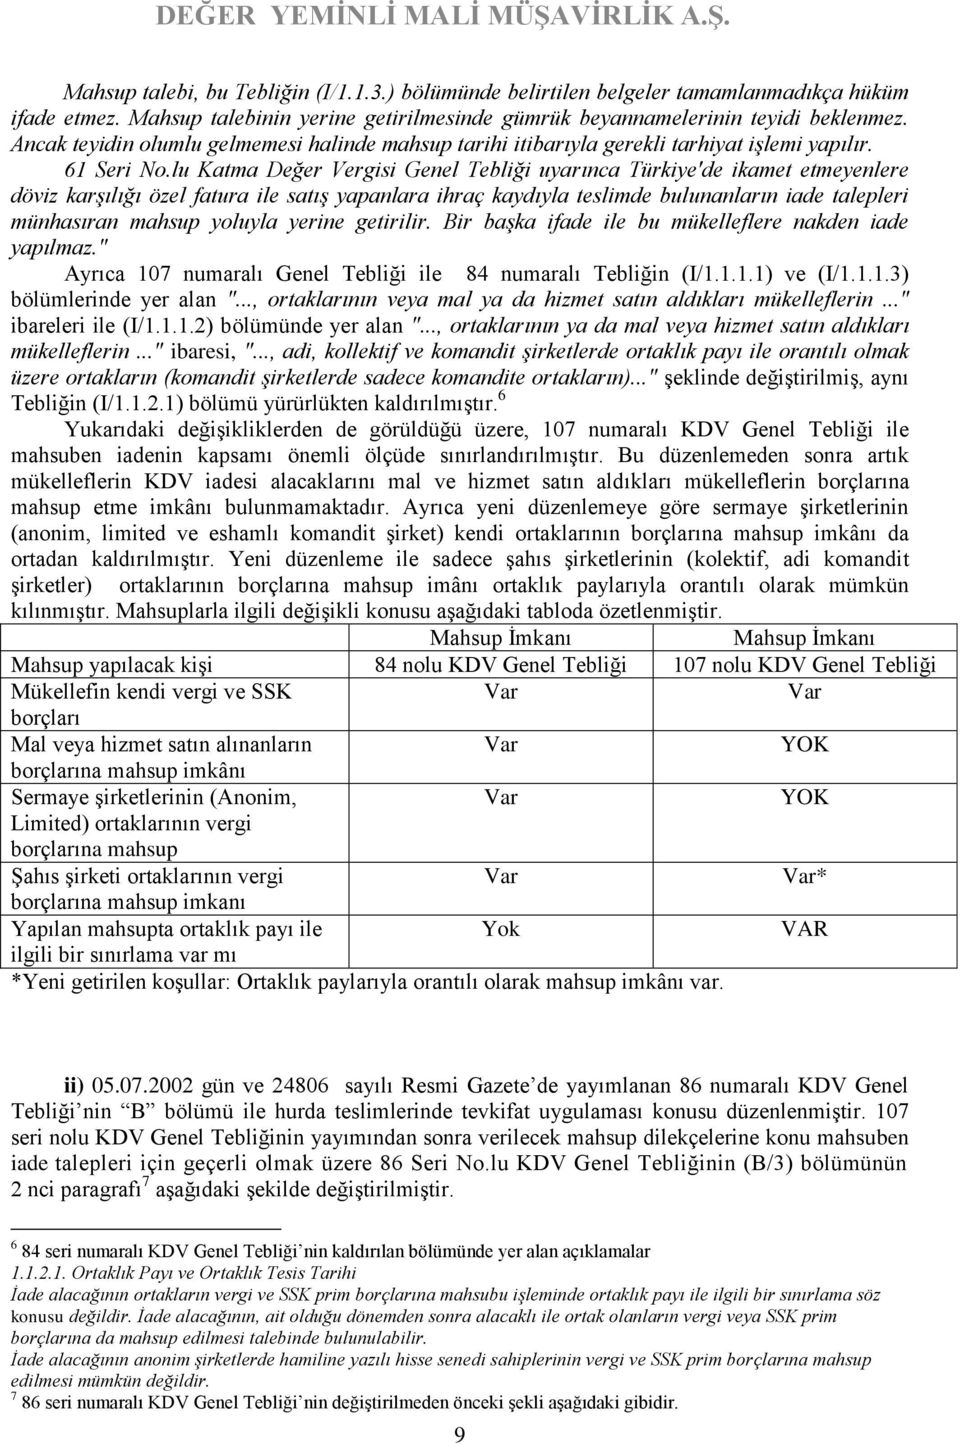 lu Katma Değer Vergisi Genel Tebliği uyarınca Türkiye'de ikamet etmeyenlere döviz karşılığı özel fatura ile satış yapanlara ihraç kaydıyla teslimde bulunanların iade talepleri münhasıran mahsup